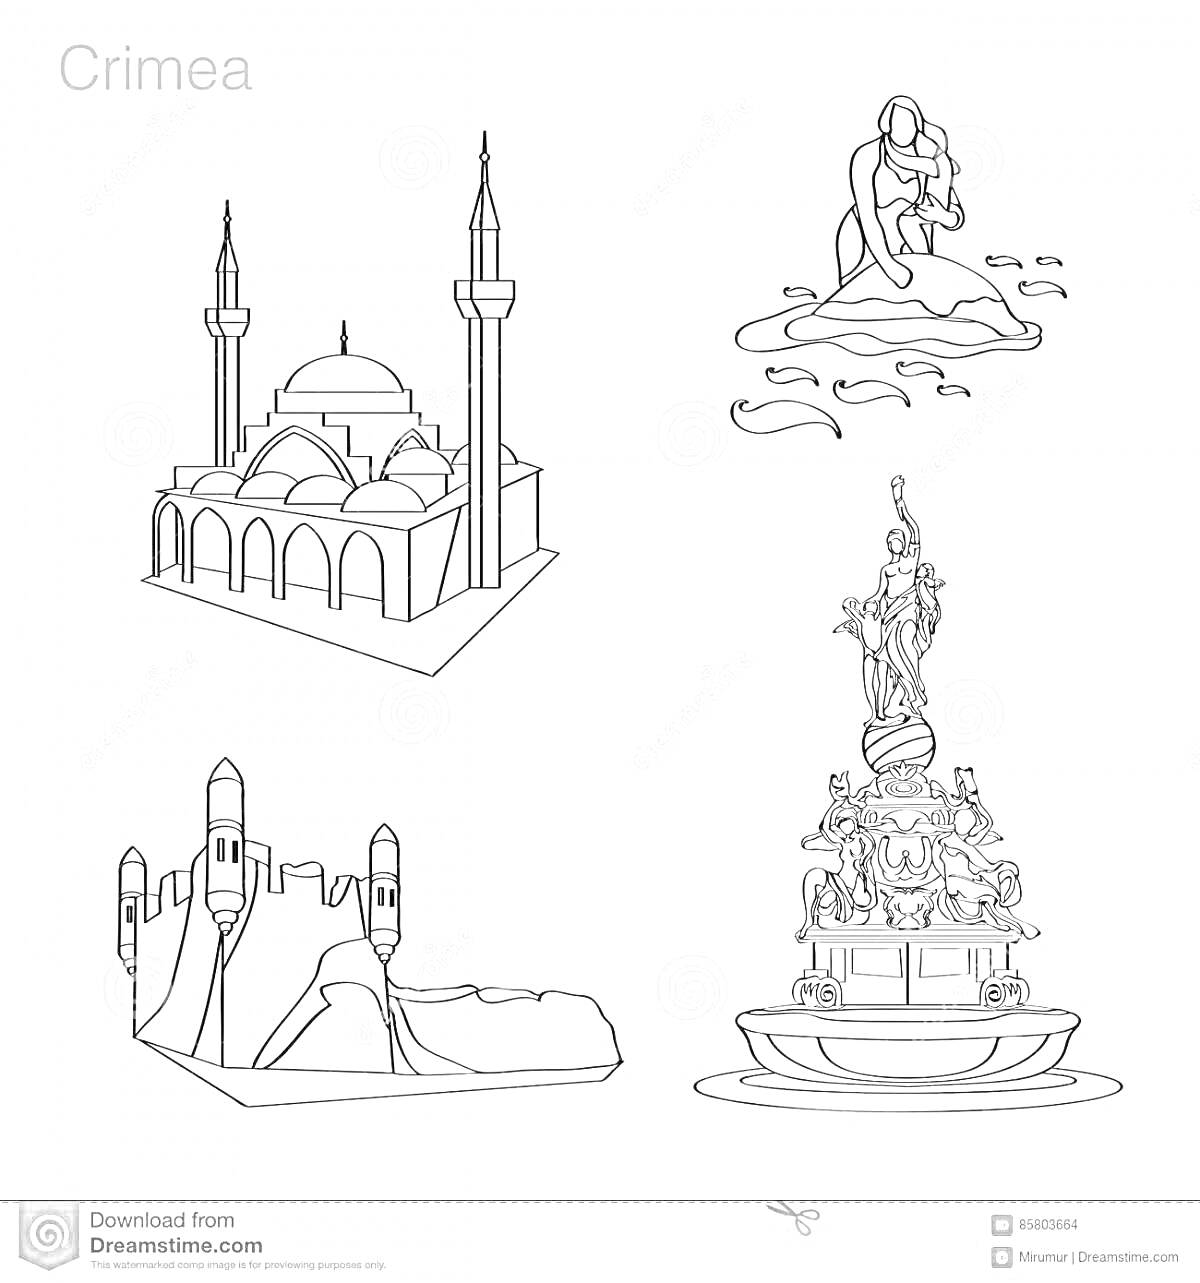 На раскраске изображено: Крым, Достопримечательности, Мечеть, Минарет, Человек, Крепость, Фонтан, Статуя, Пьедестал